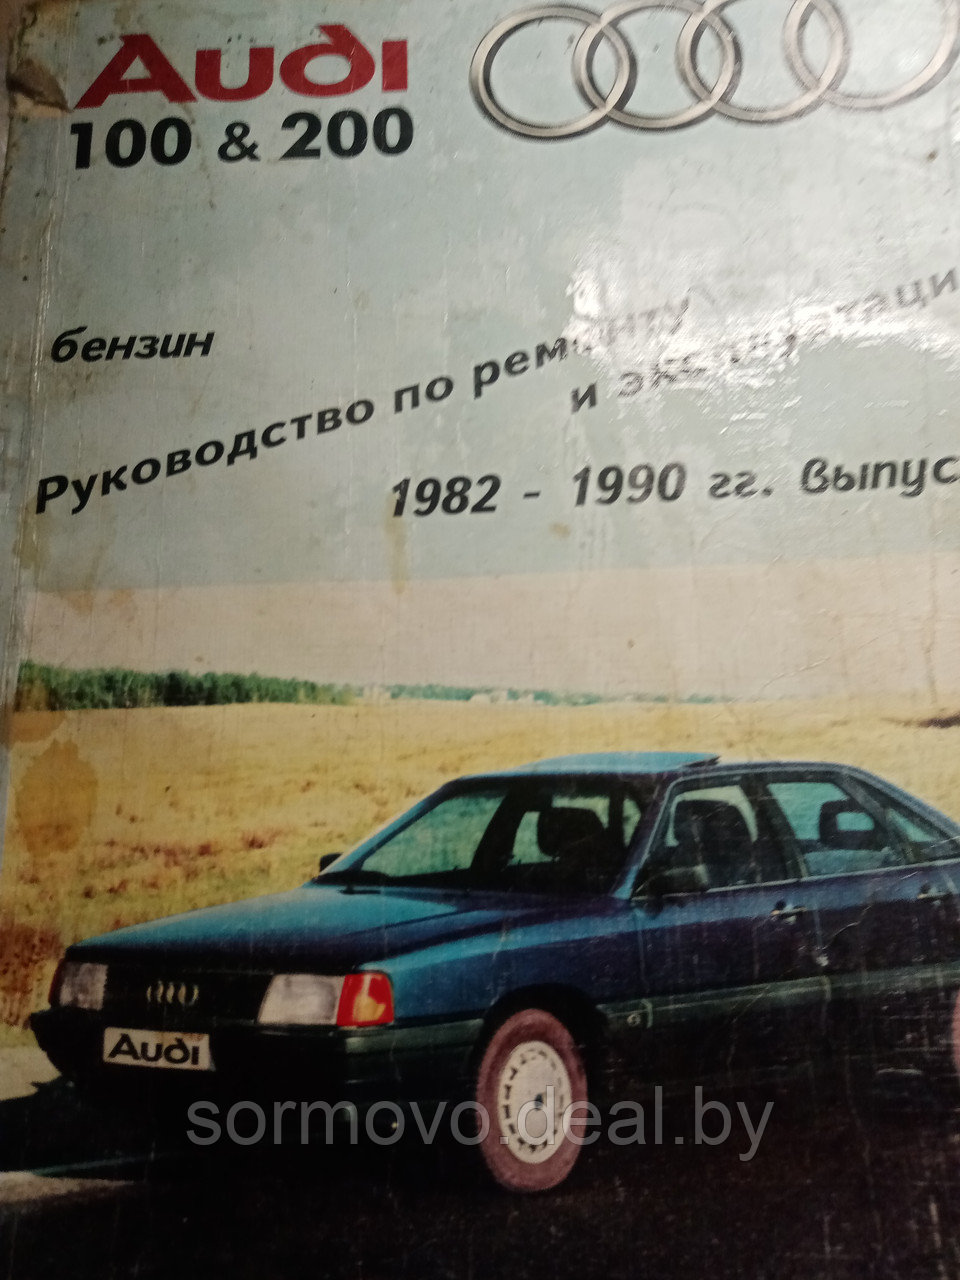 Ауди 100-200. 1982-1990 гг. выпуска199650